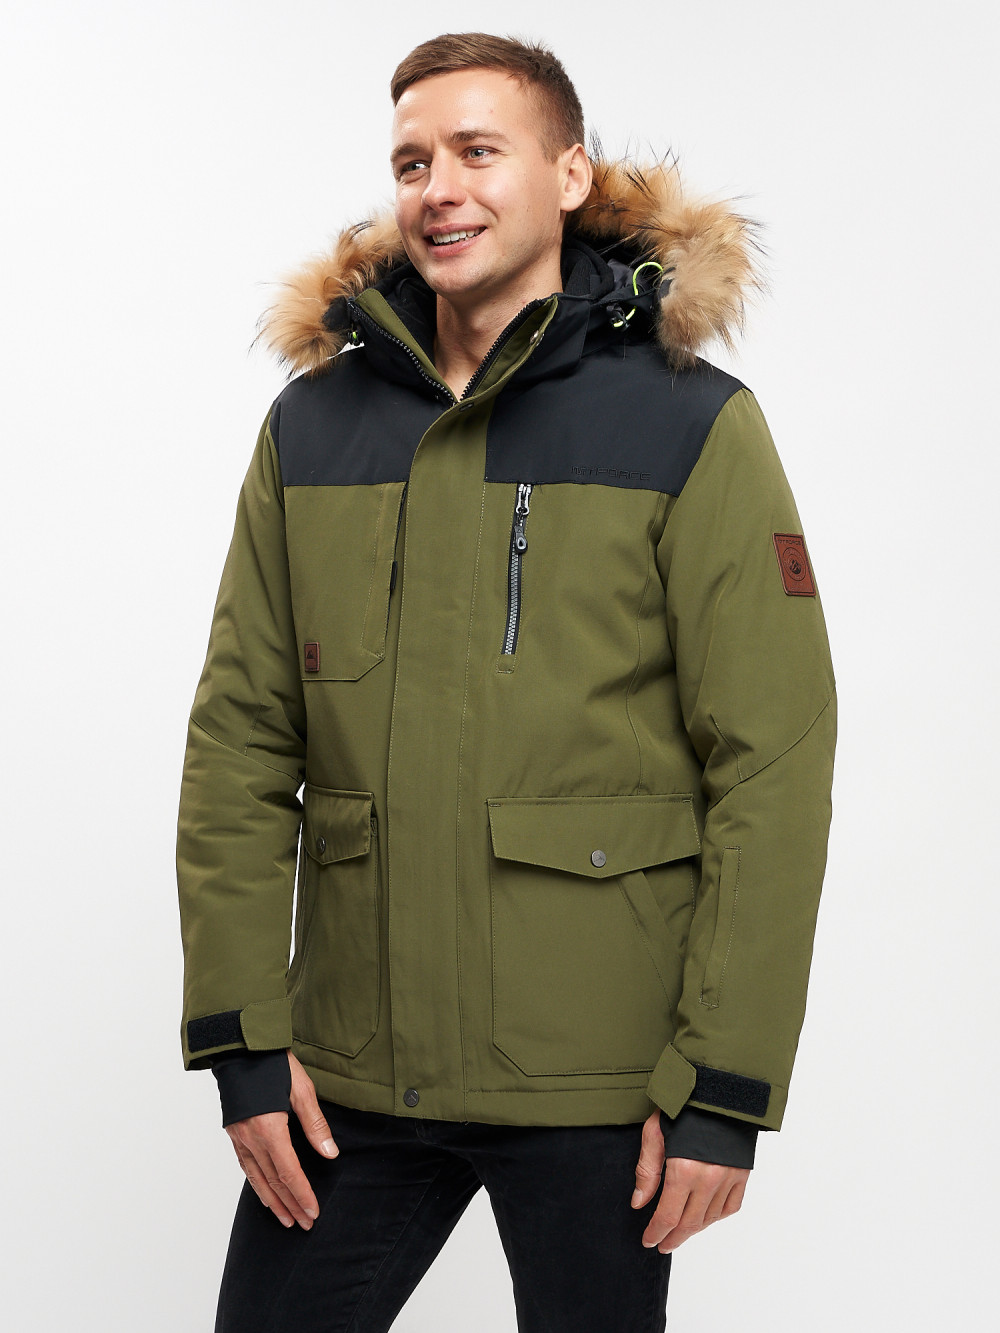 Куртка зимняя MTFORCE мужская удлиненная с мехом цвета хаки 2155-1Kh, 56